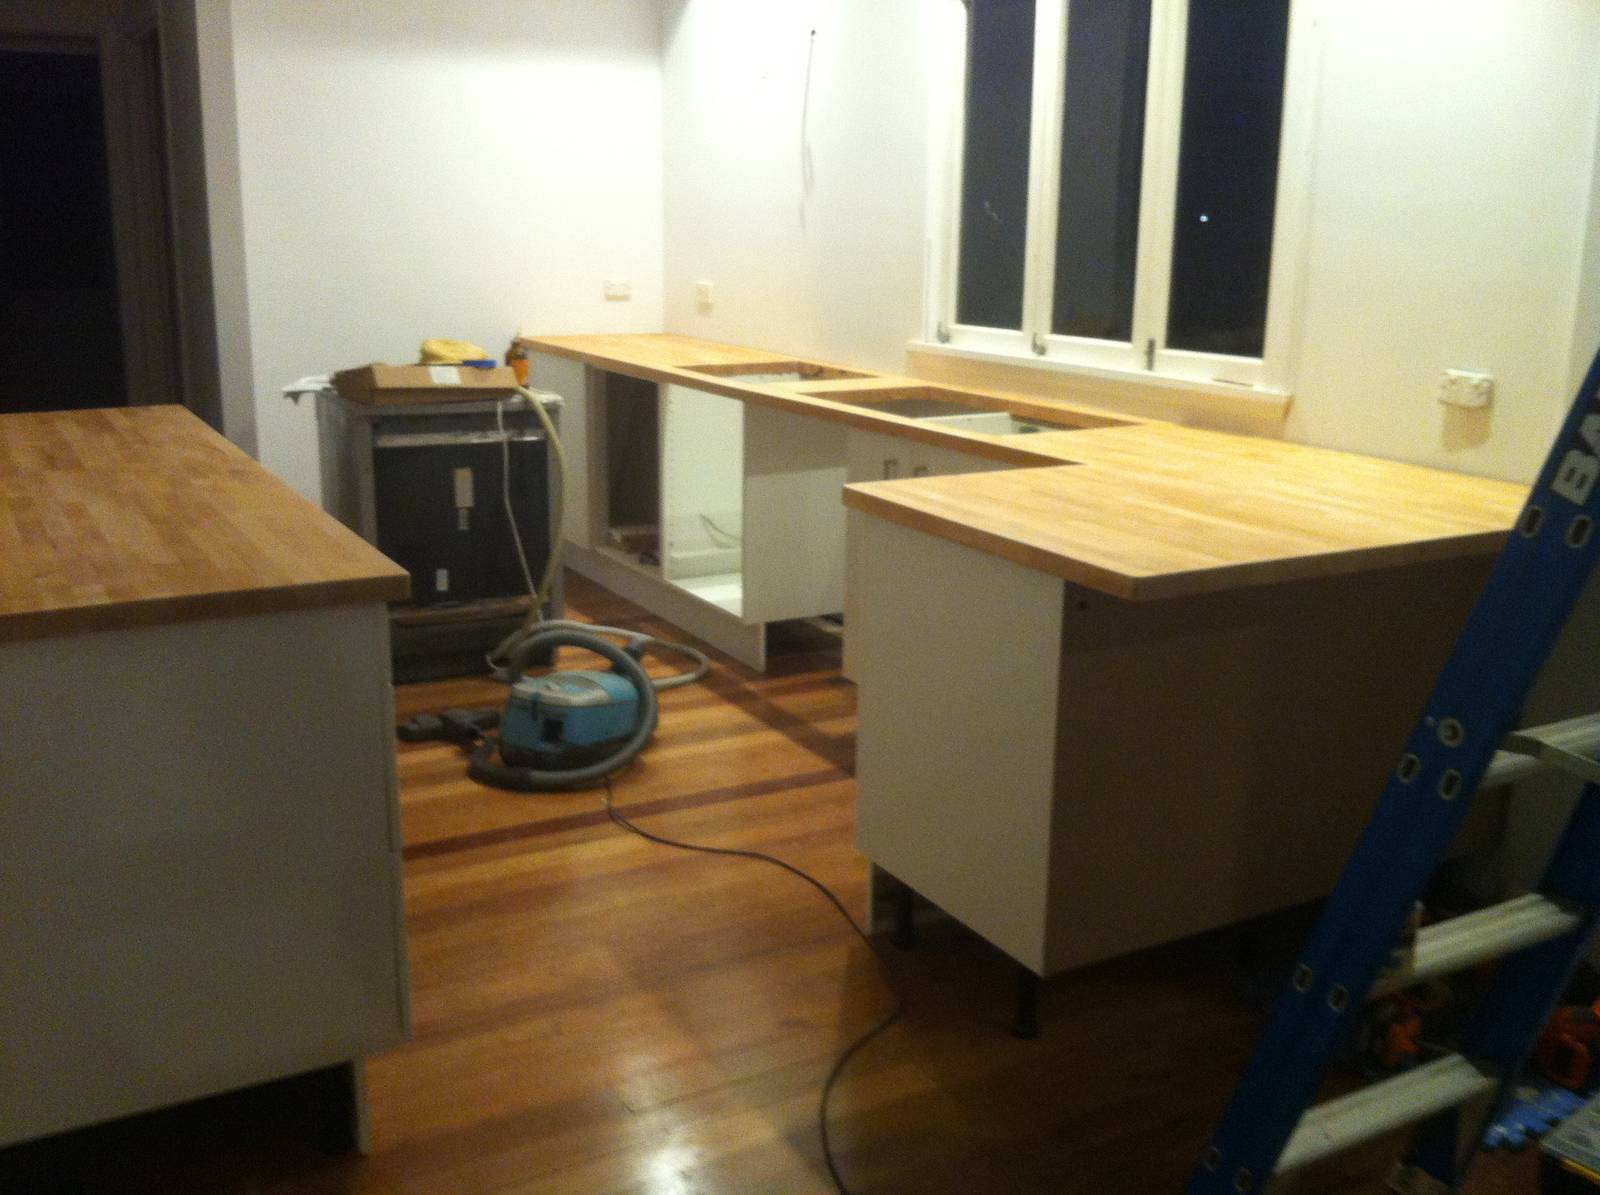 Ikea kitchen 2014